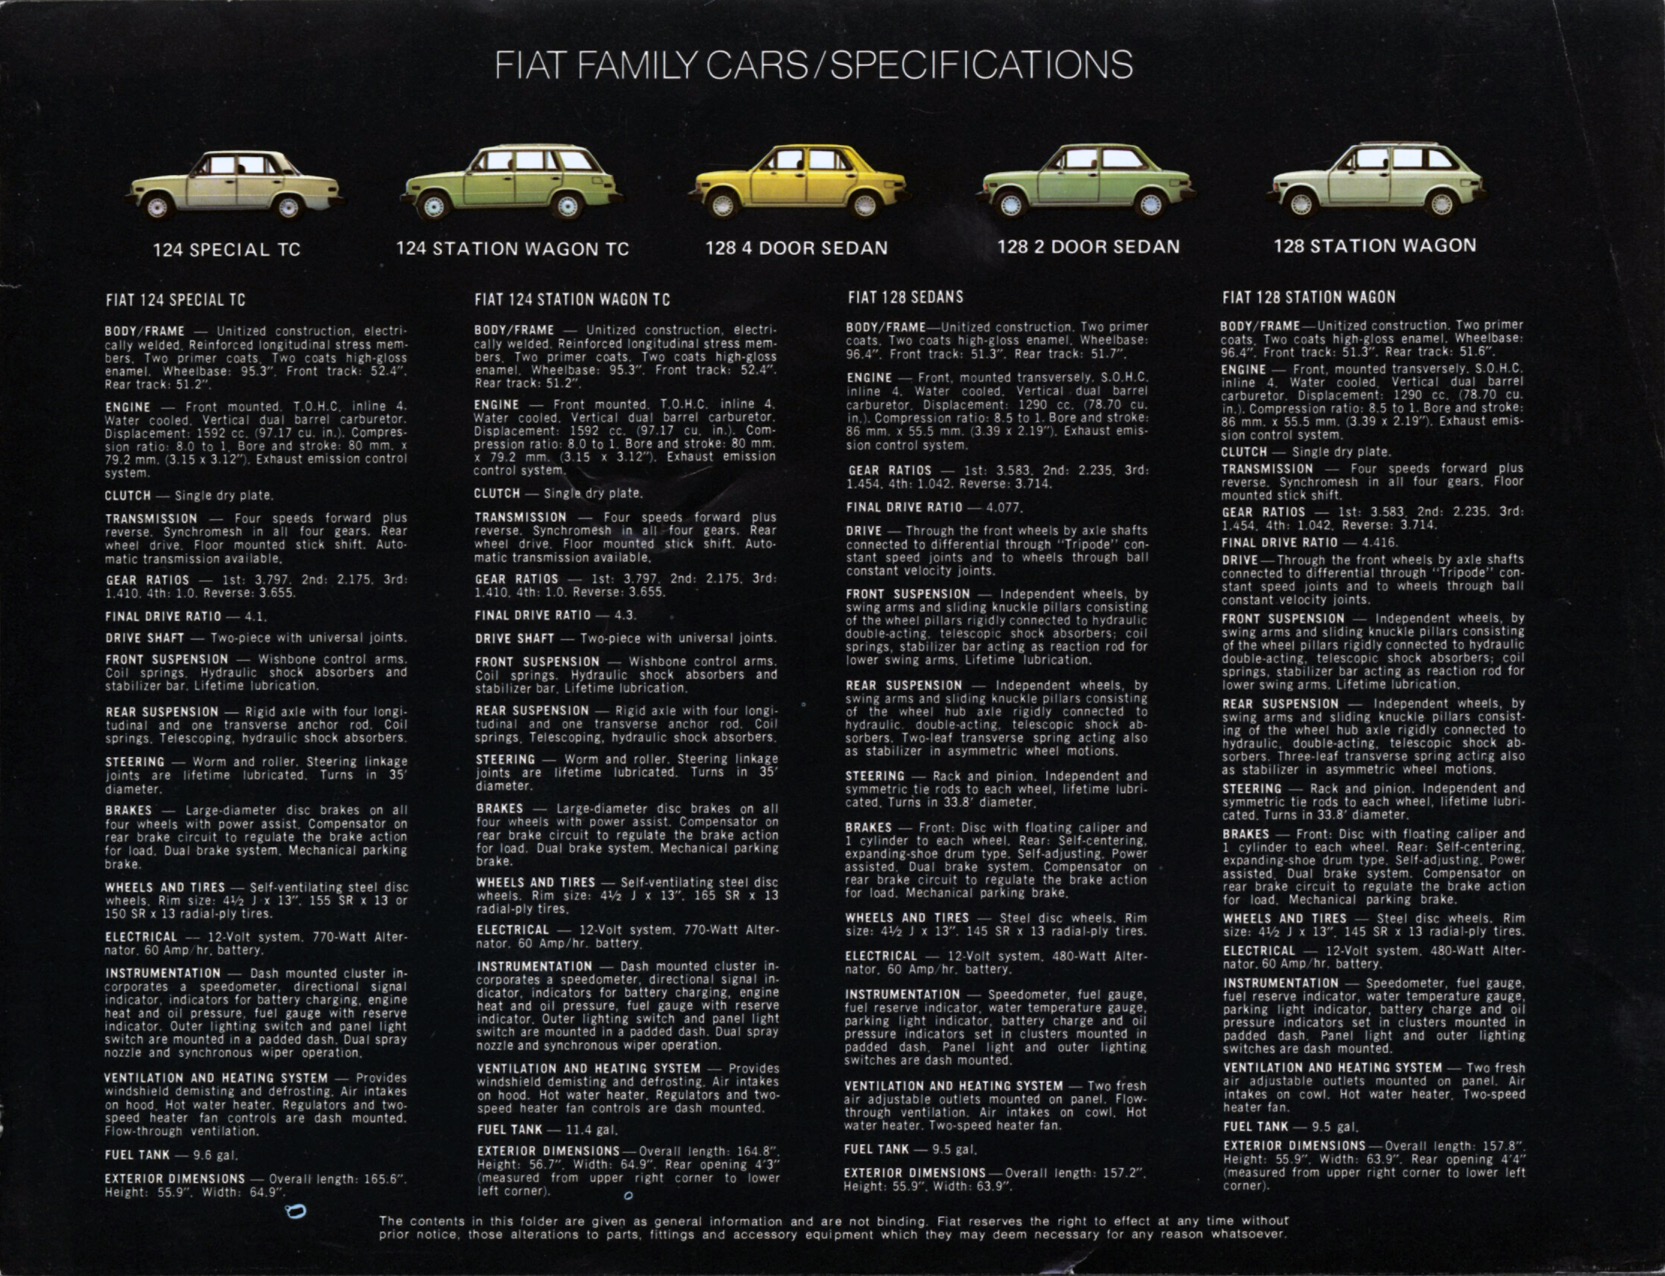 1974 Fiat Full-Line